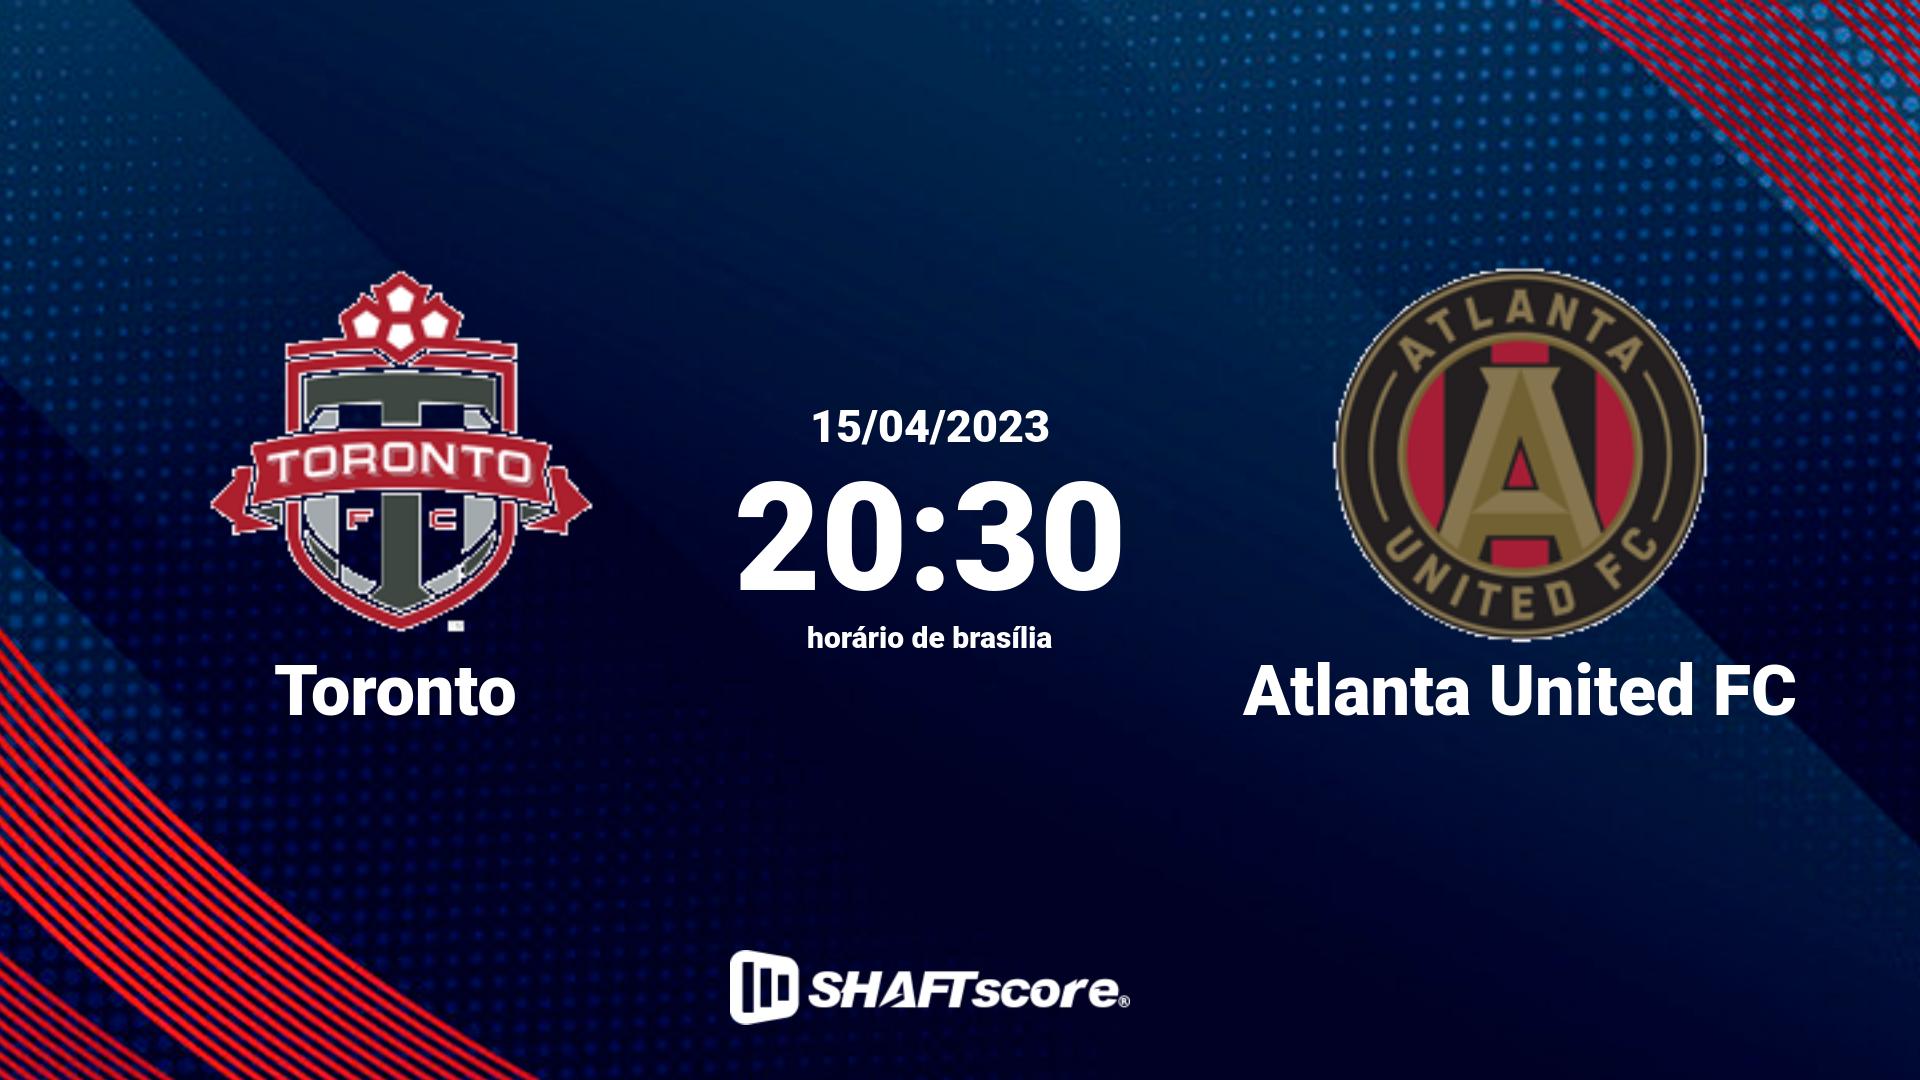 Estatísticas do jogo Toronto vs Atlanta United FC 15.04 20:30